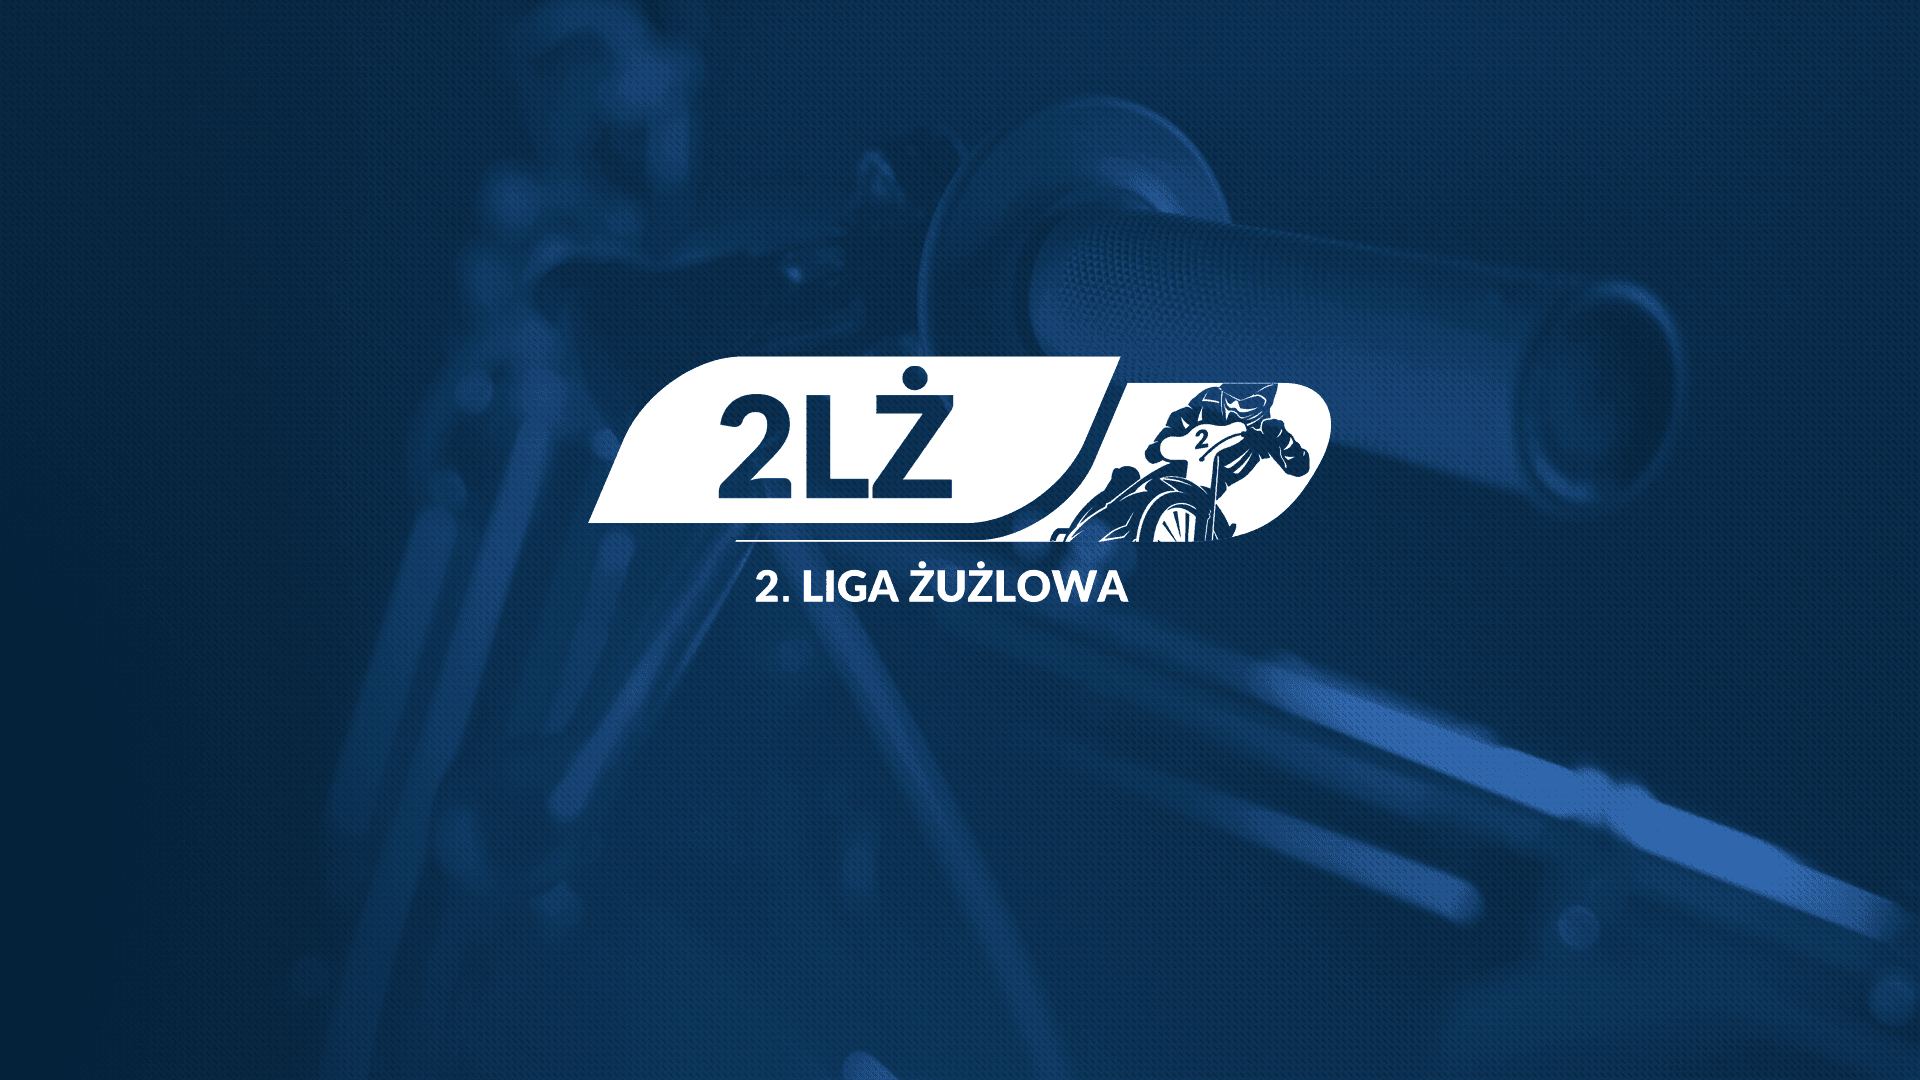 2 LŻ: Trans MF Landshut Devils i 7R Stolaro Stal Rzeszów ze zwycięstwami